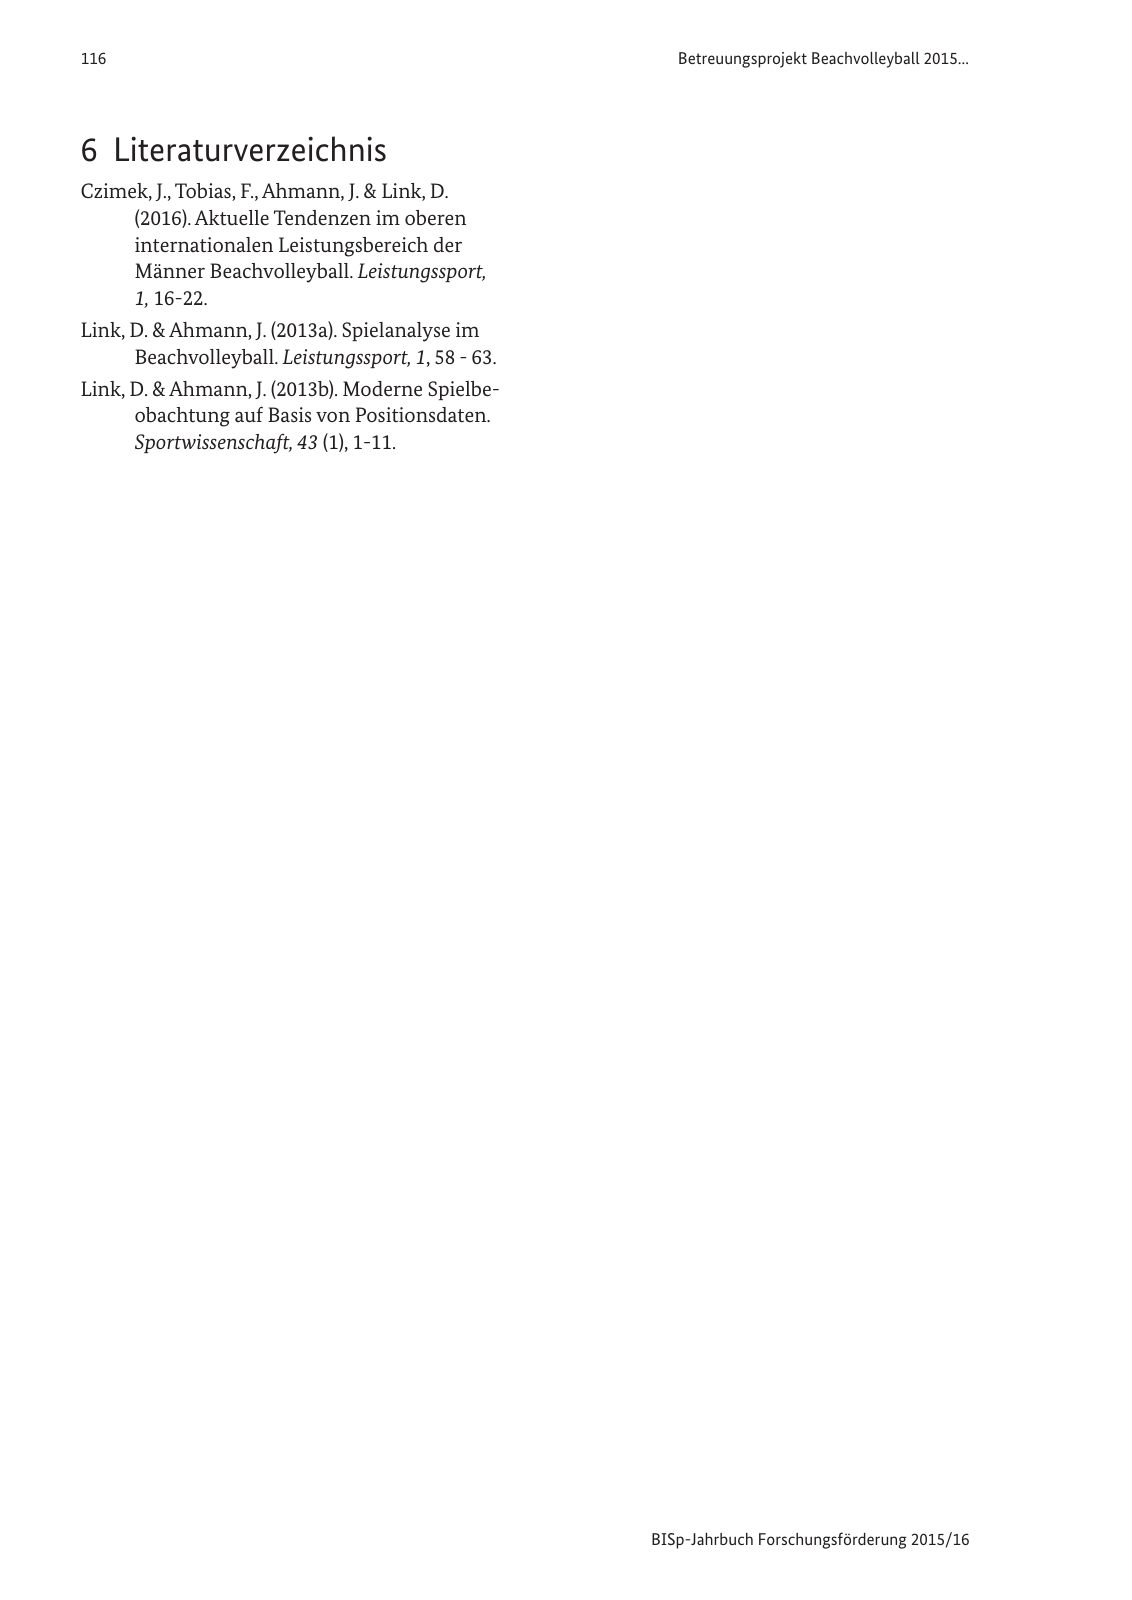 Vorschau BISp-Jahrbuch Forschungsförderung 2015/16 Seite 118